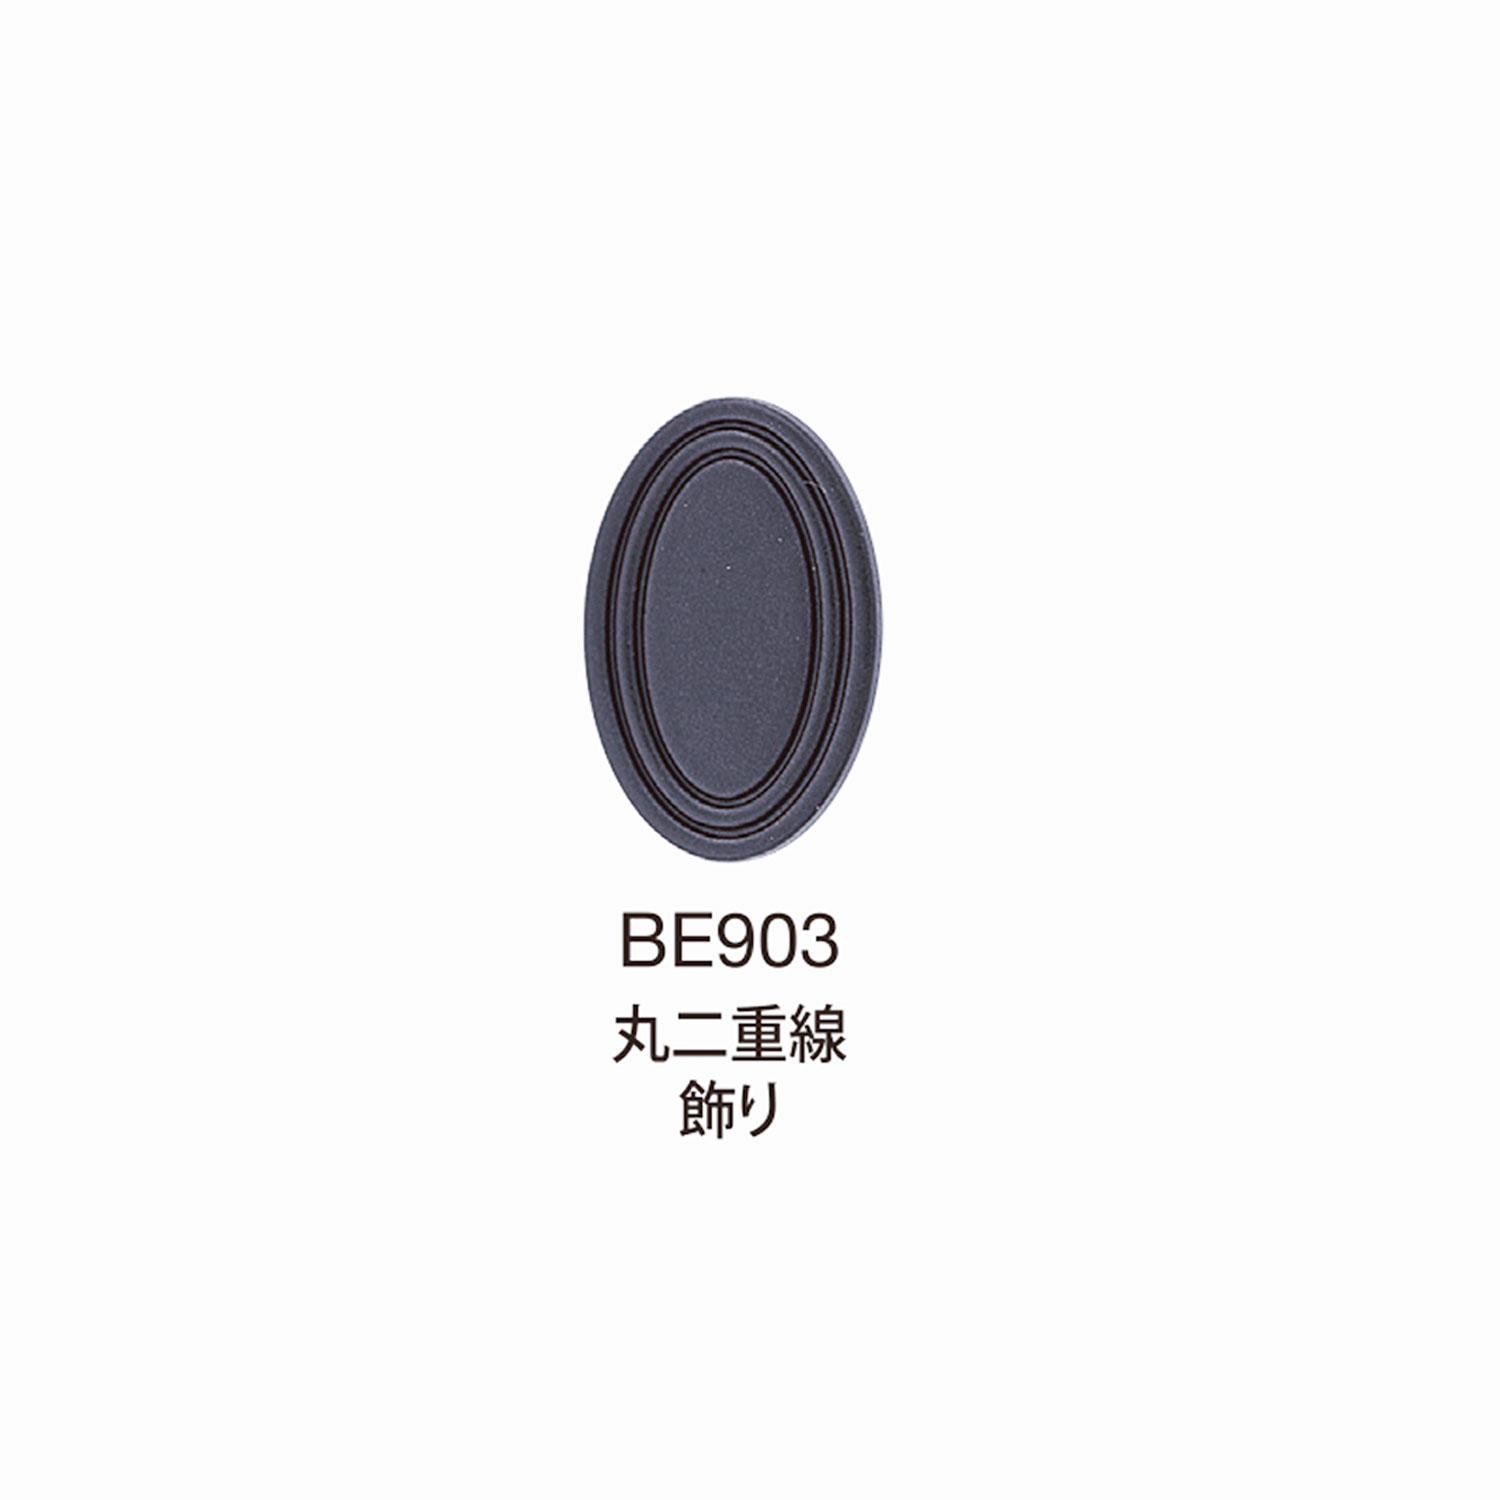 BE903 BEREX α Top Hardware Round Double Line Dekoration[Schnallen Und Ring] Morito